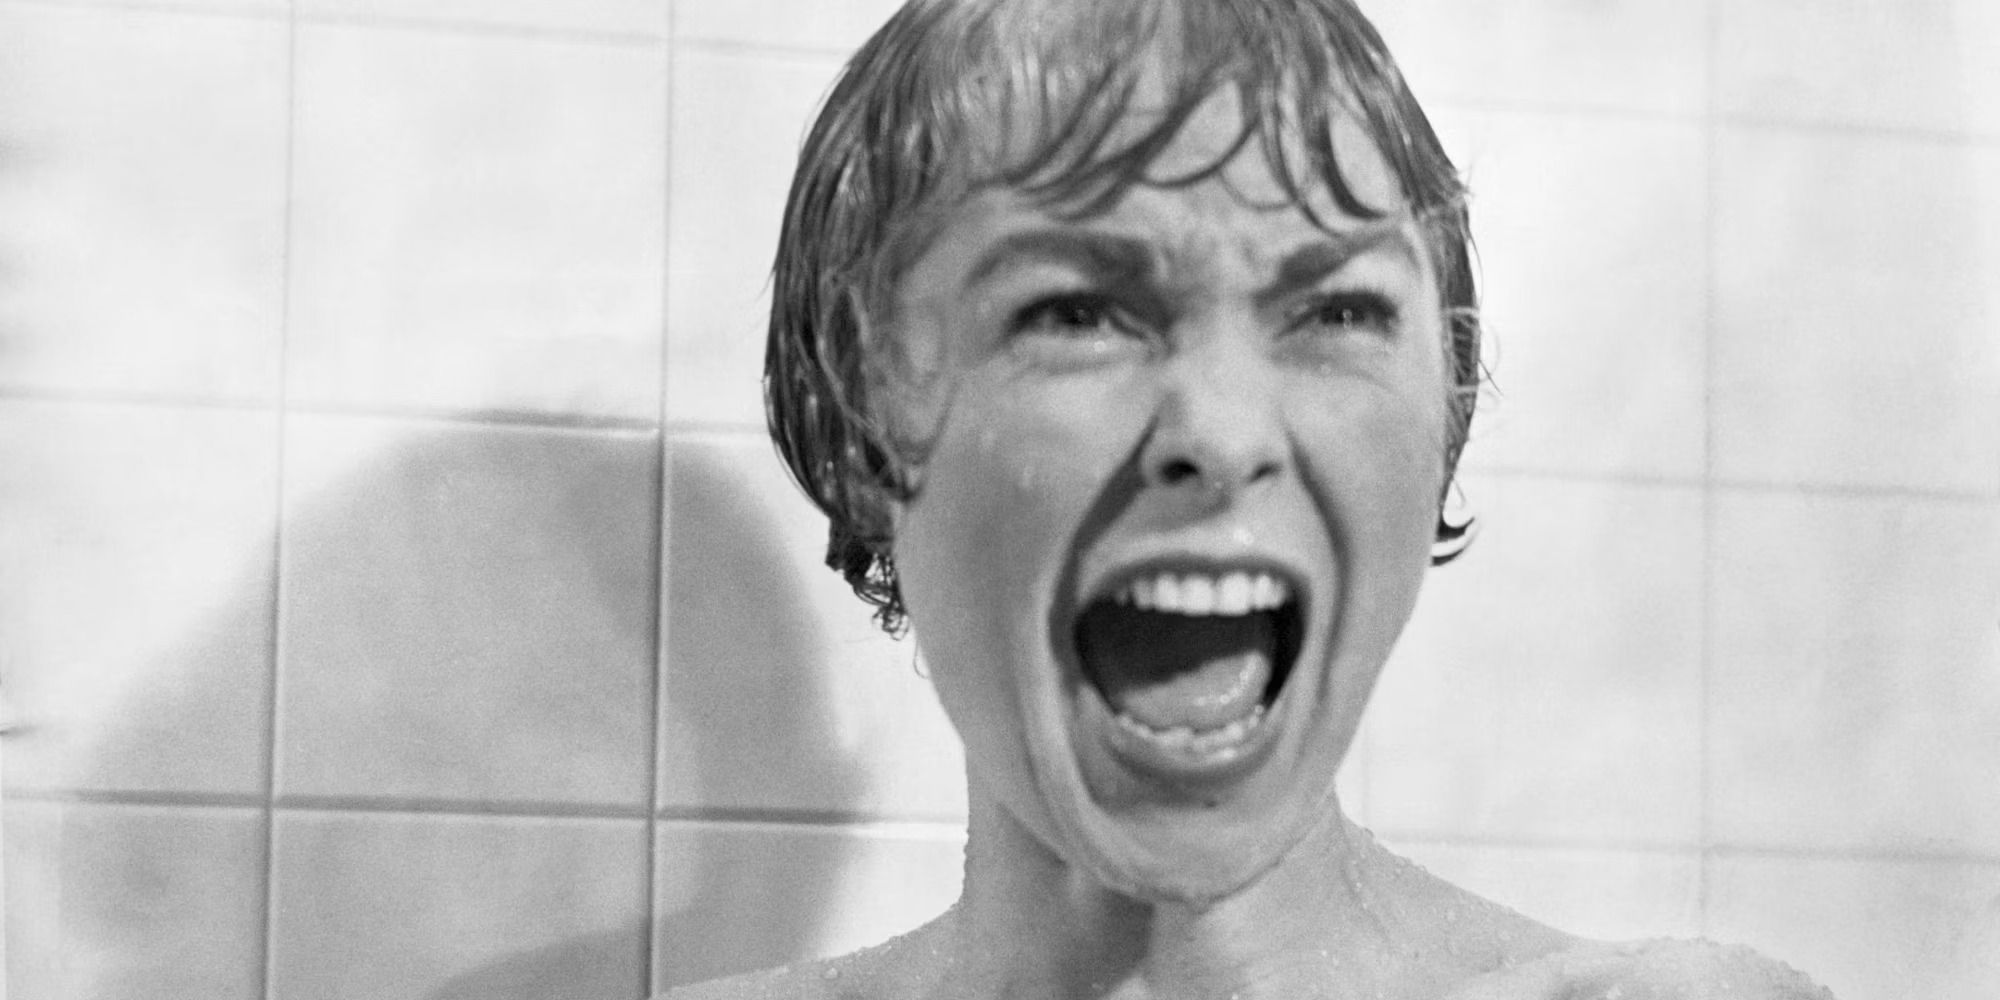 Marion Crane hurle sous la douche dans Psycho